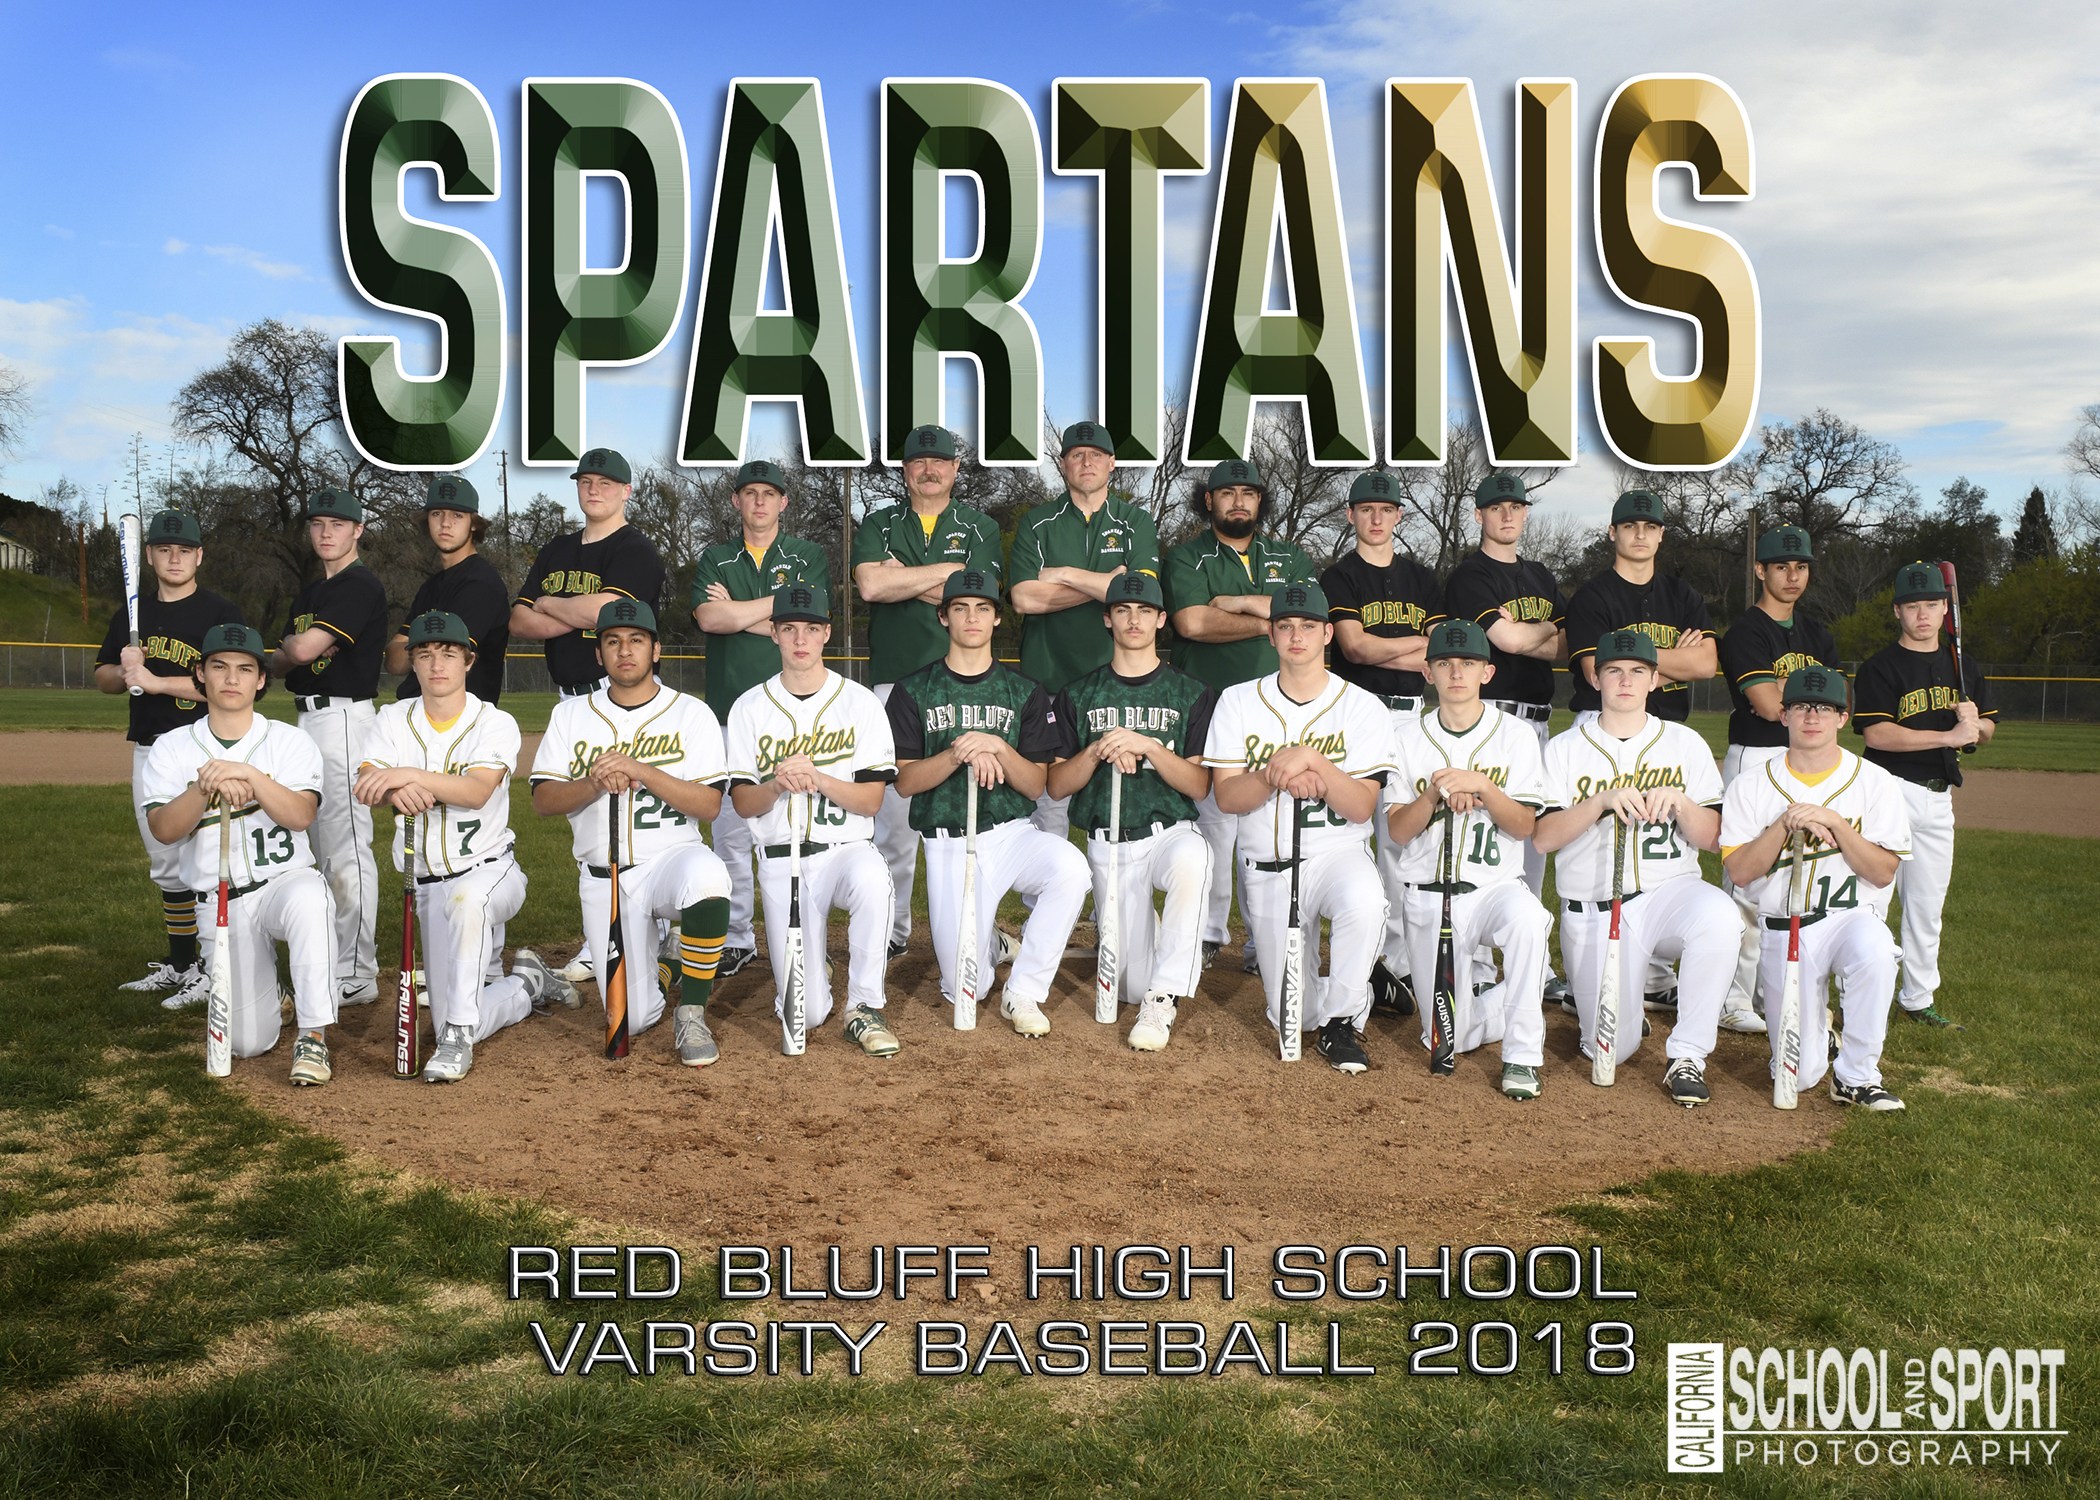 2018 Varsity Baseball Team Picture